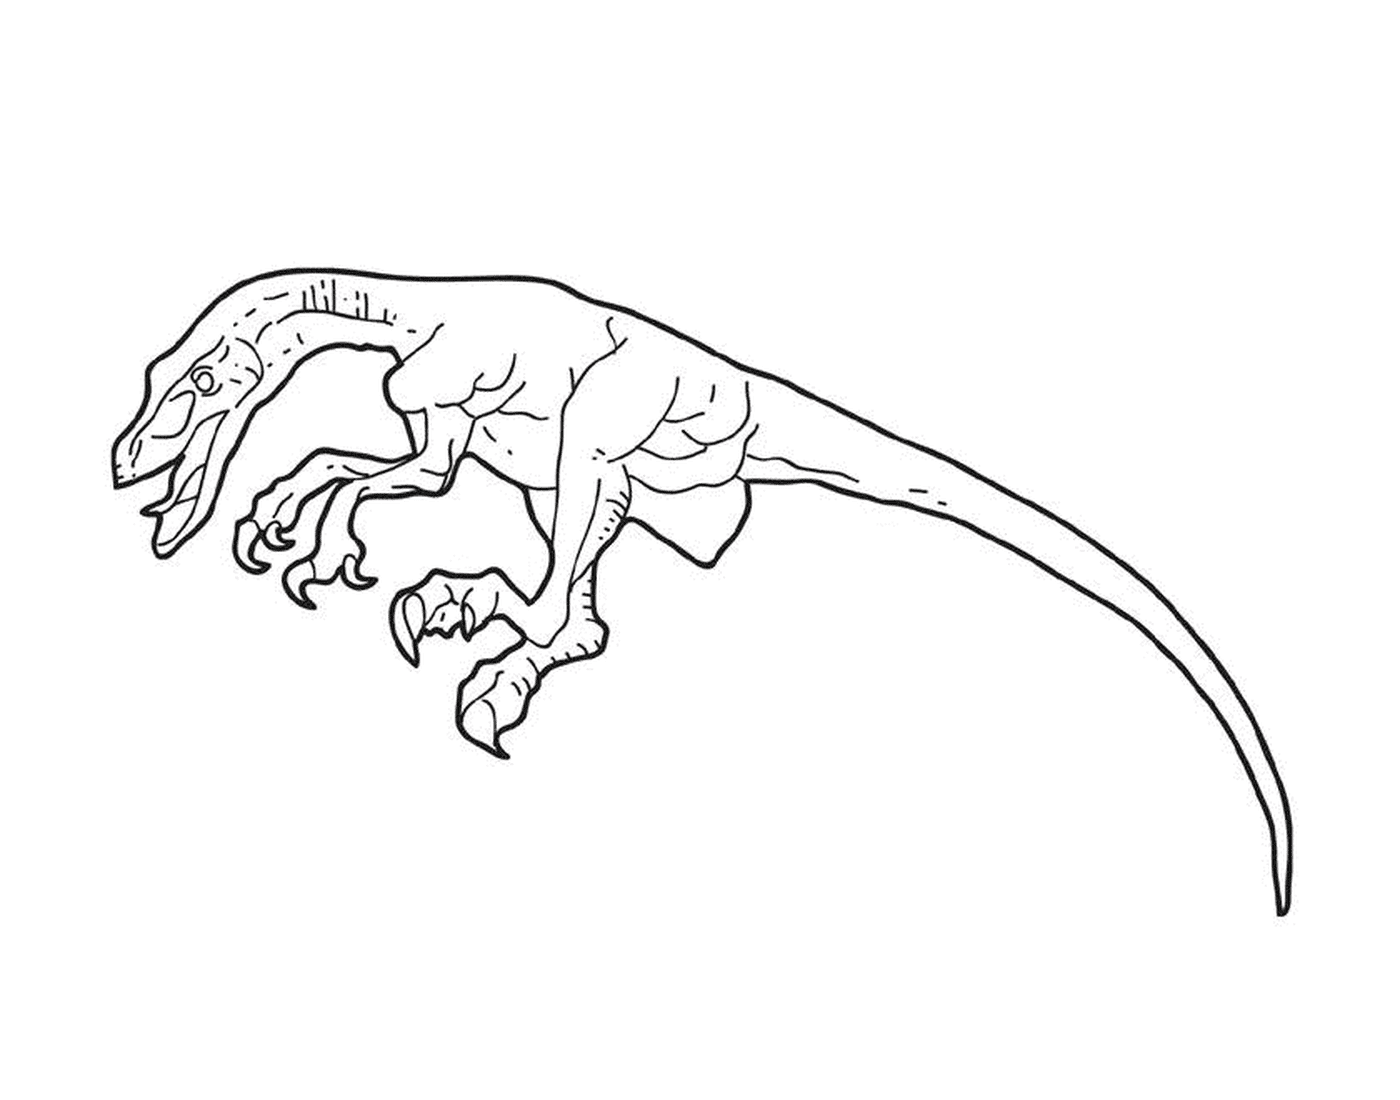  A dinosaur drawn in ink 